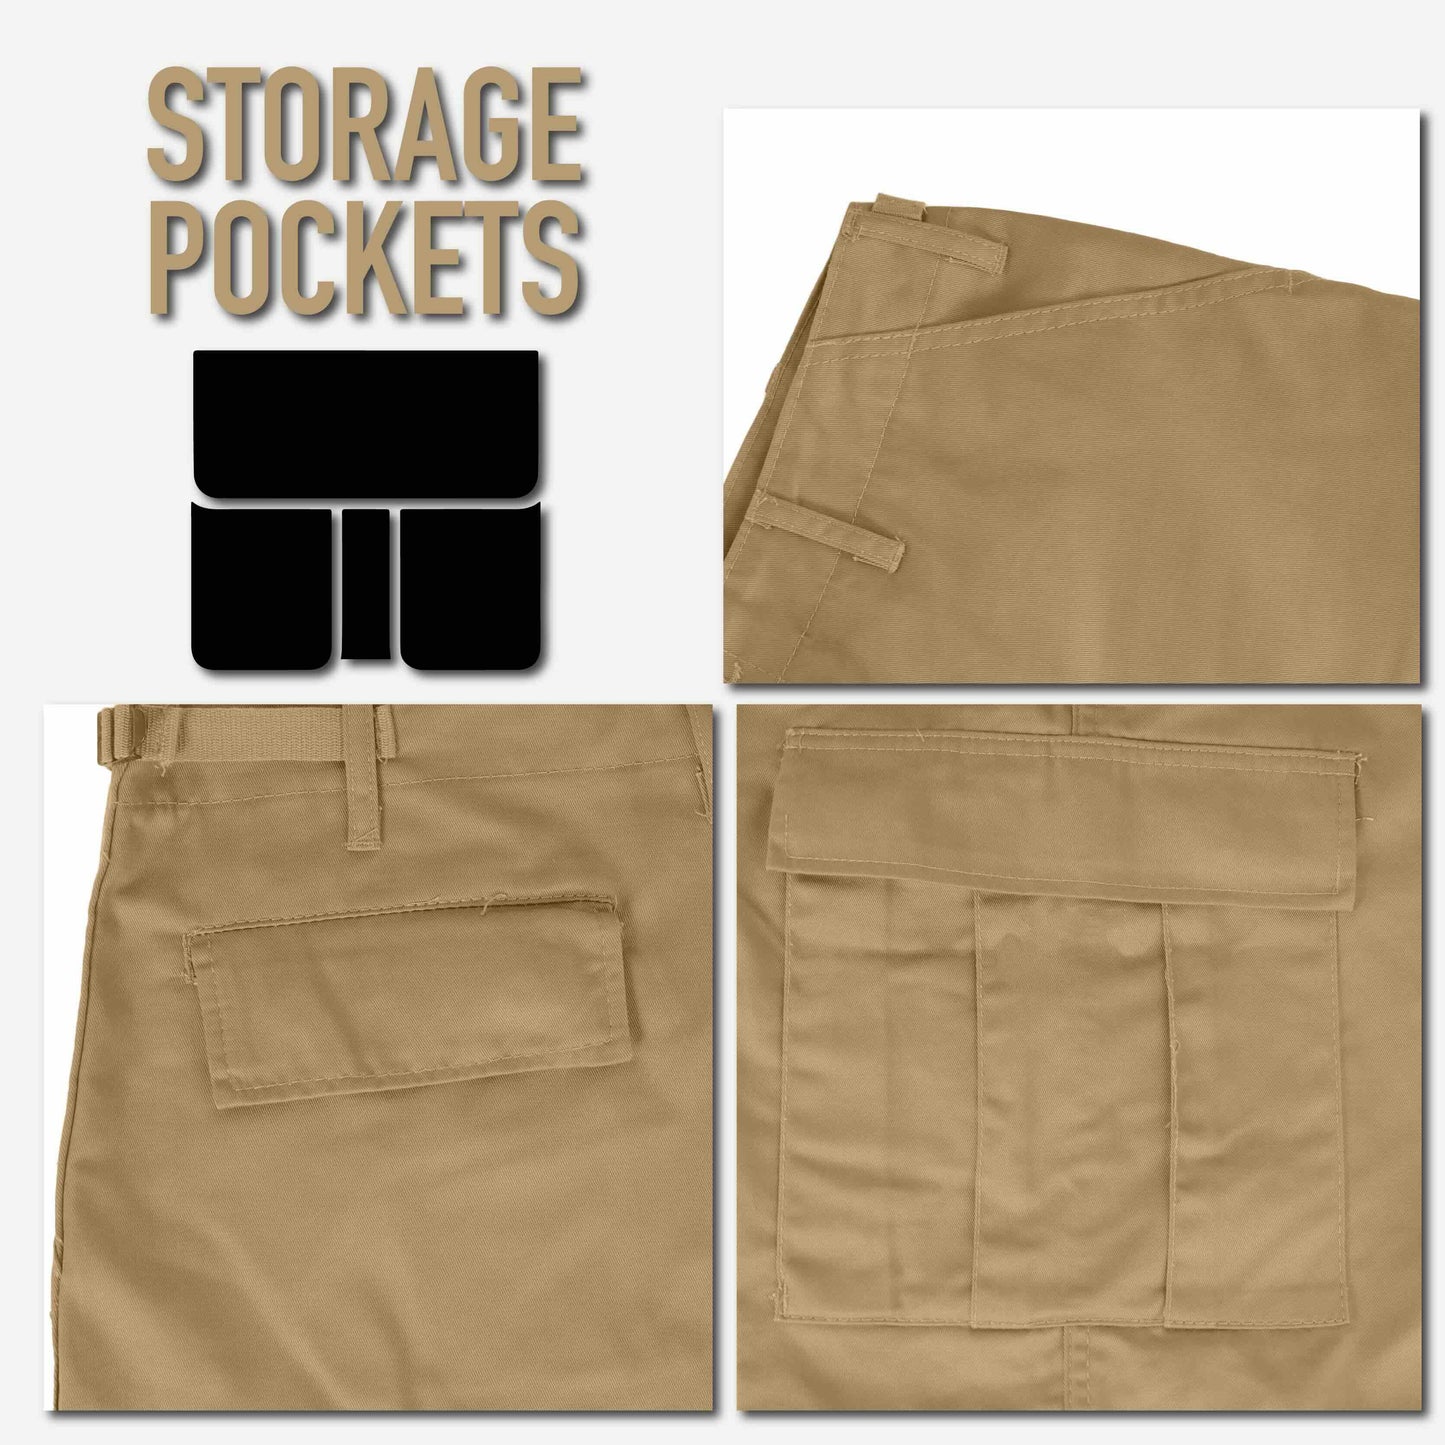 Shorts - Rothco Tactical BDU Shorts